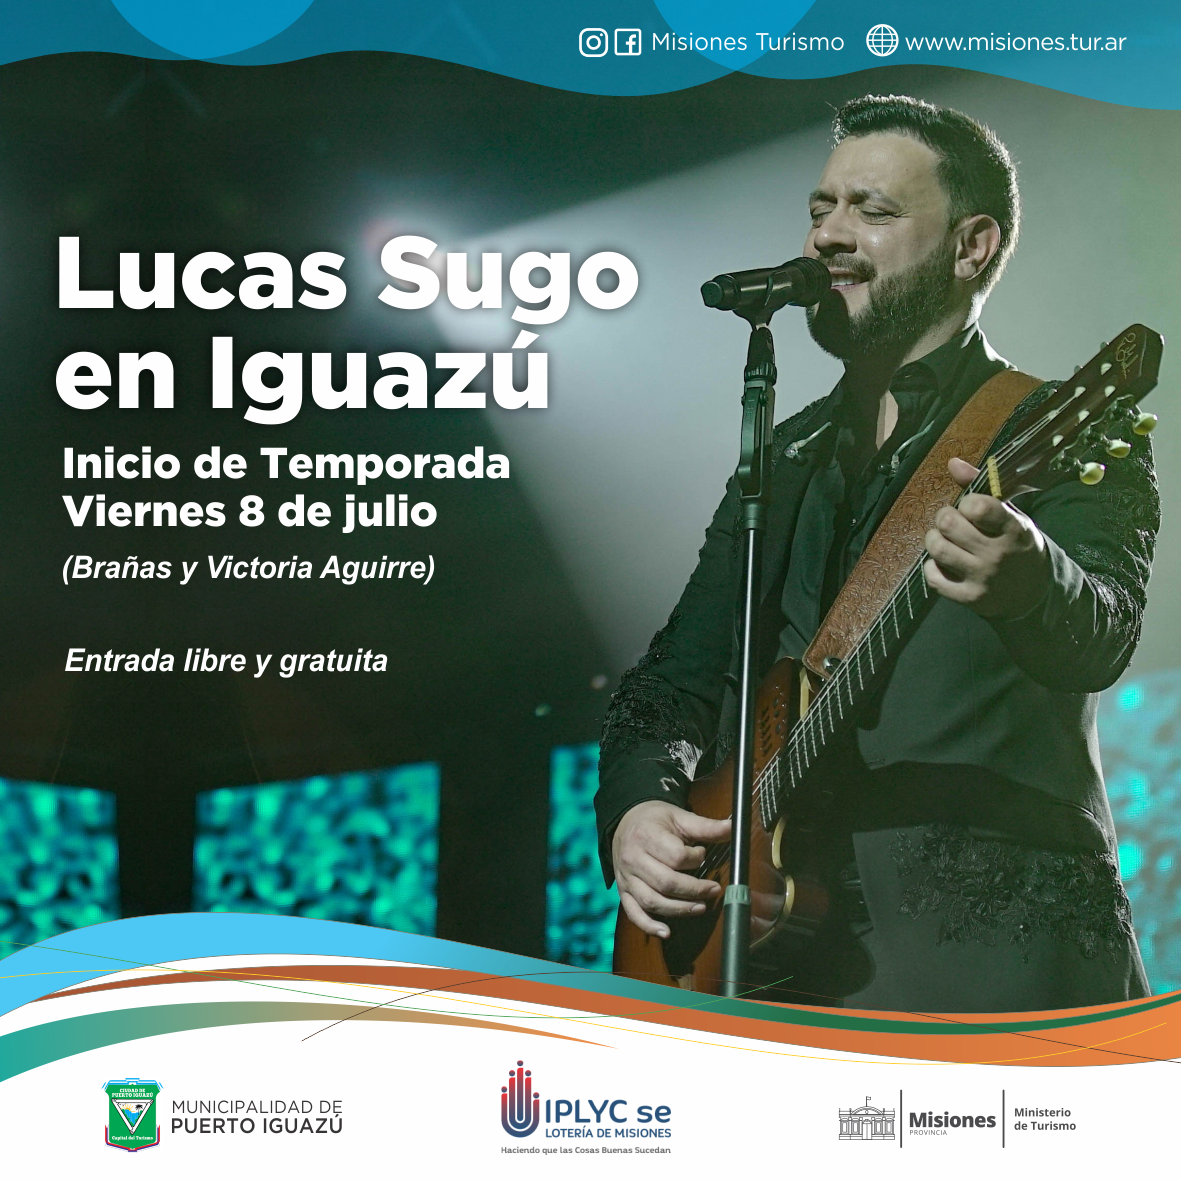  Lucas Sugo en Puerto Iguazú